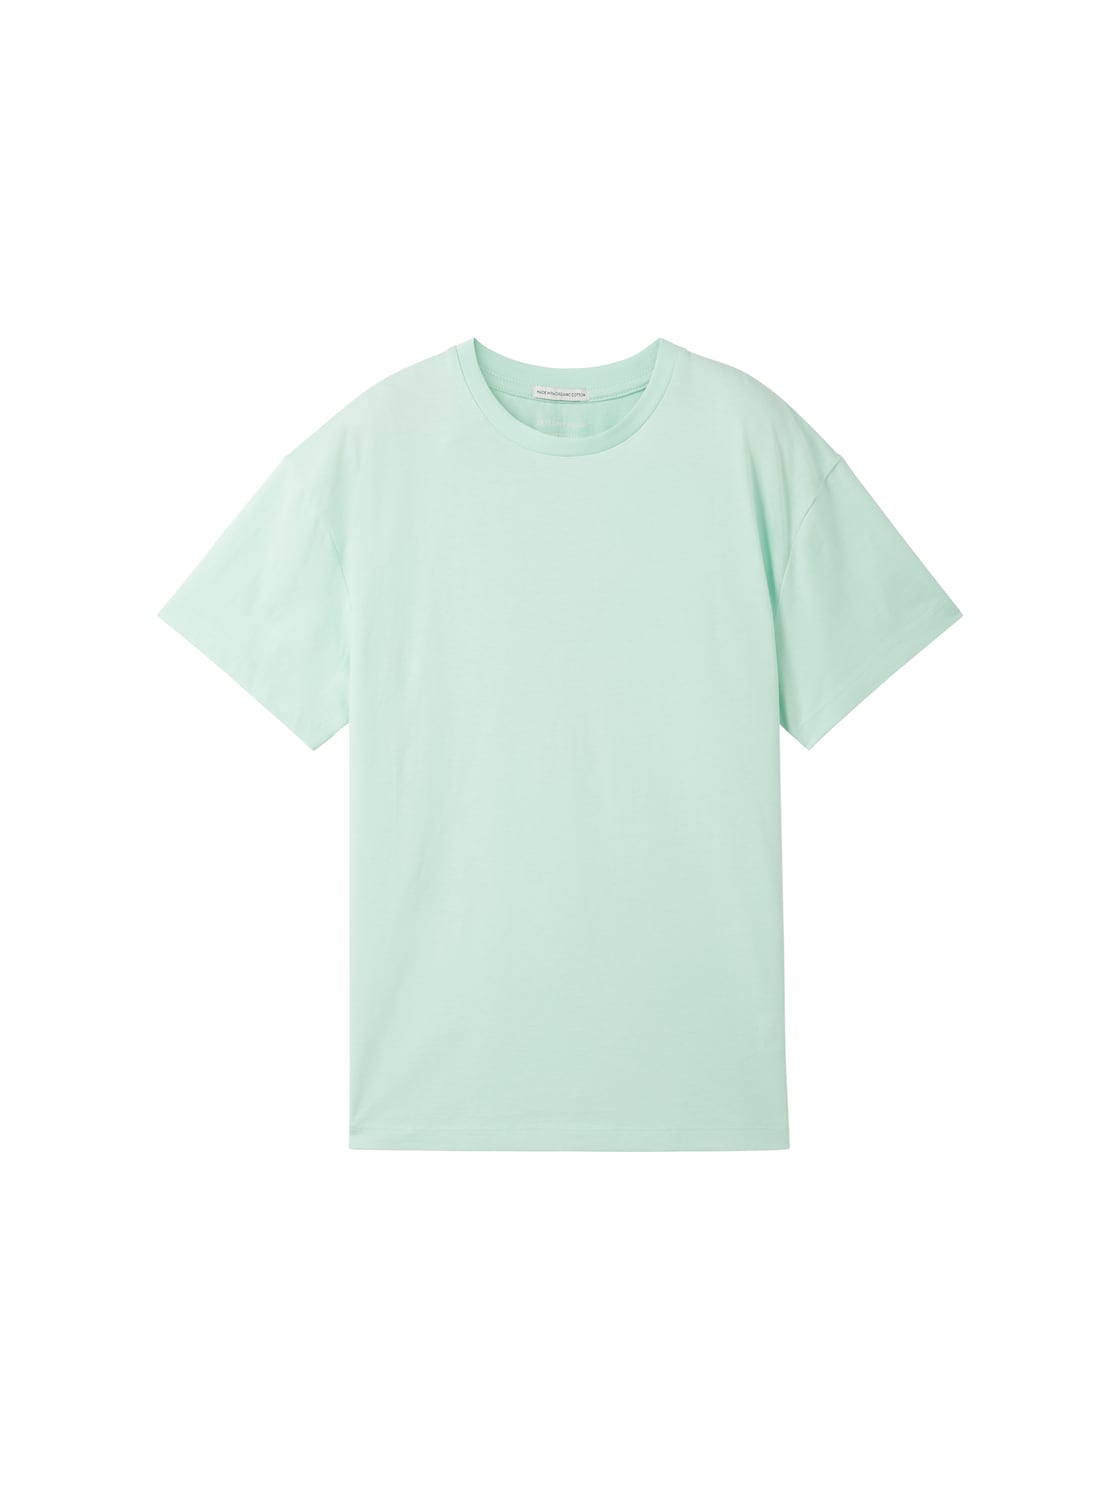 TOM TAILOR Jungen T-Shirt mit Bio-Baumwolle, grün, Uni, Gr. 176 von Tom Tailor